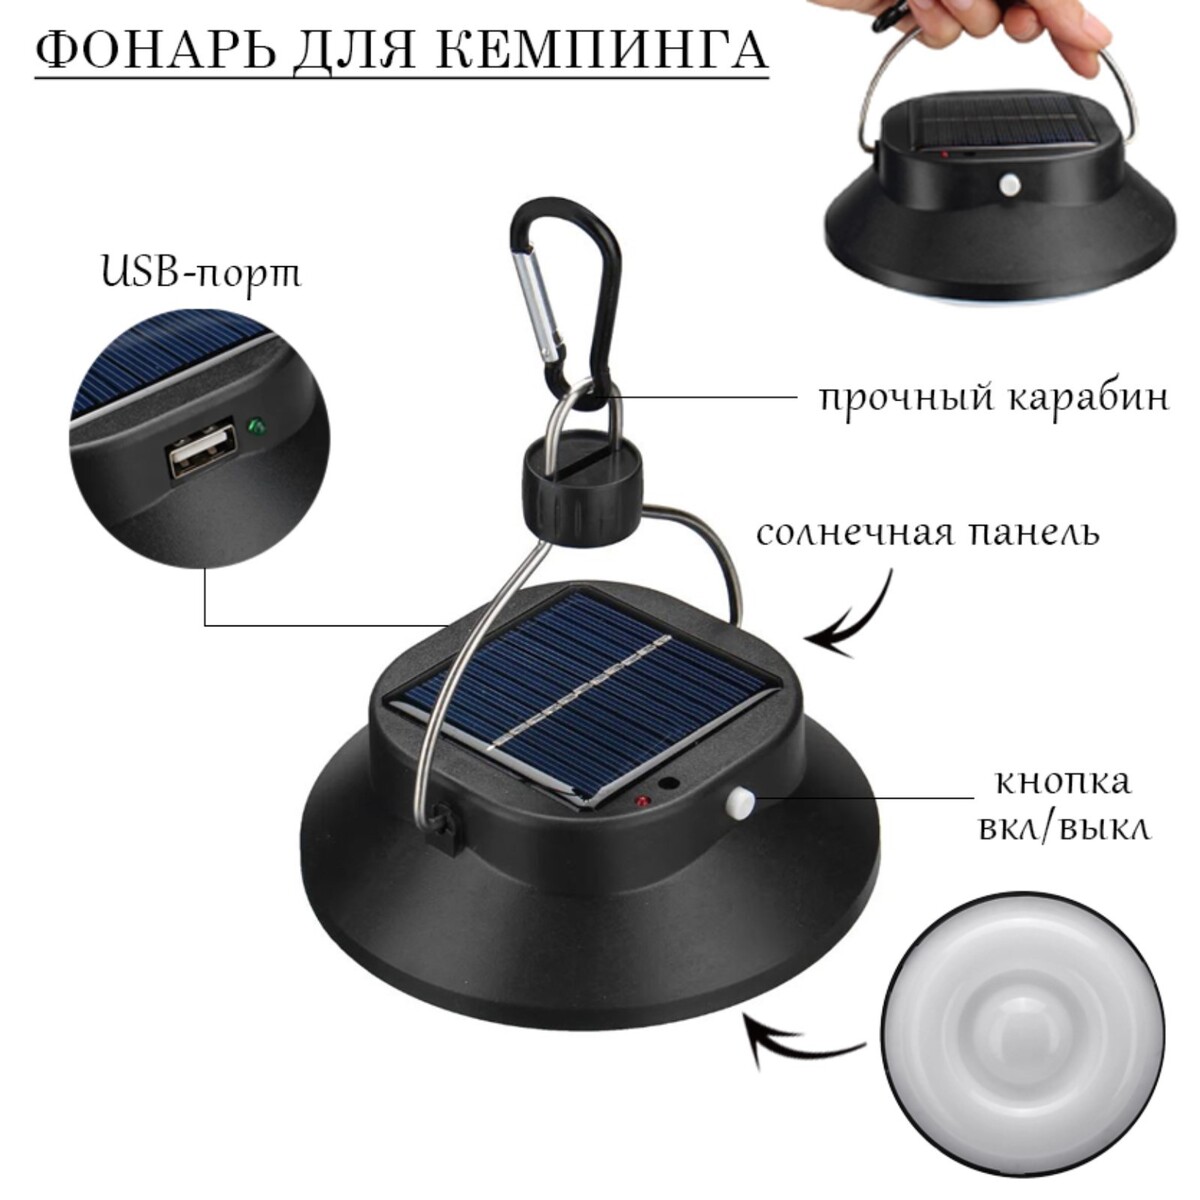 Фонарь кемпинговый аккумуляторный, солнечная батарея, 12 х 13.5 см, от usb, черный